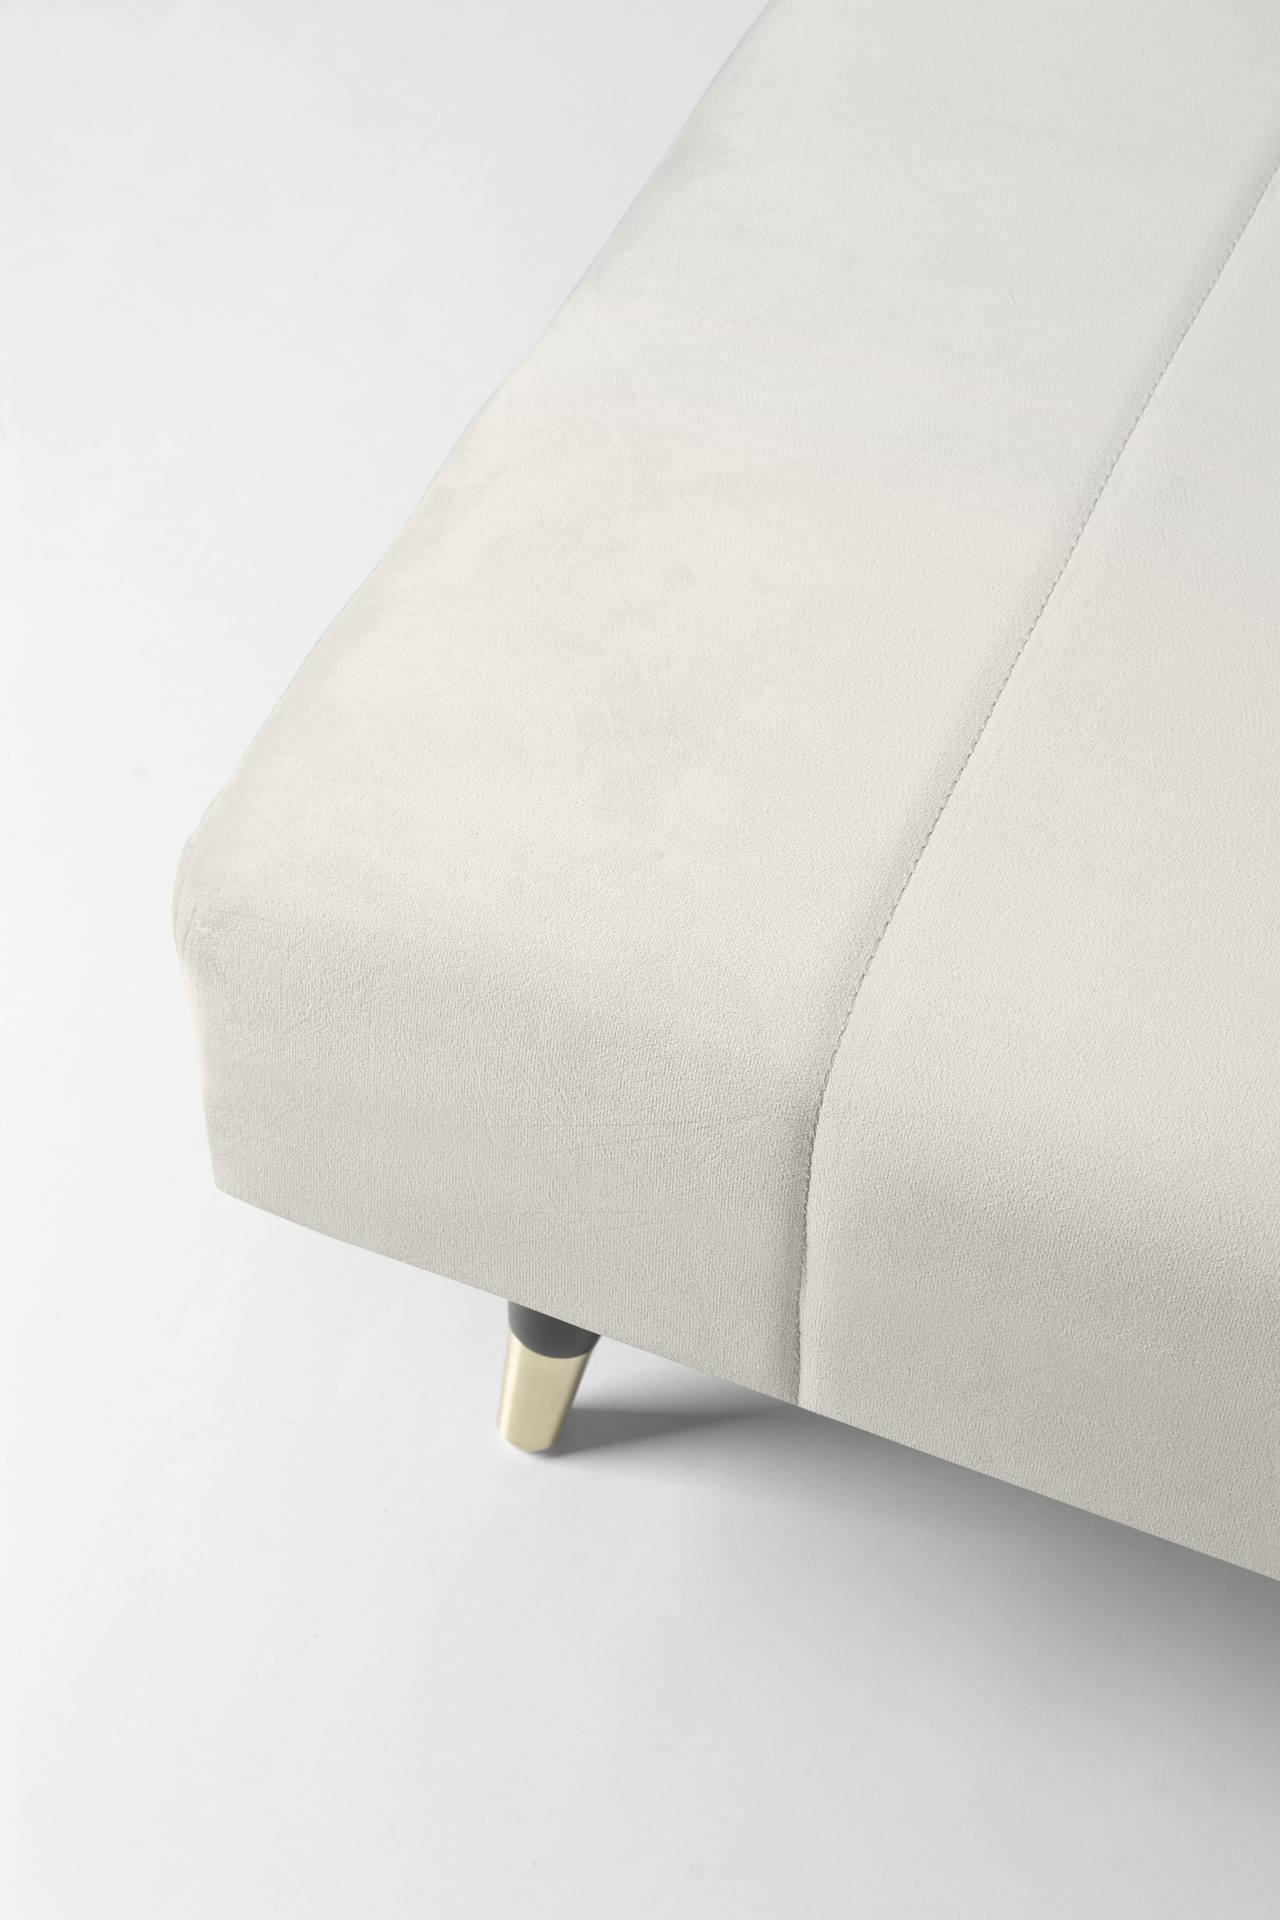 Das Schlafsofa Alma überzeugt mit seinem klassischen Design. Gefertigt wurde es aus Samt, welcher einen beige Farbton besitzt. Das Gestell ist aus Metall und hat eine schwarzen Farbe. Die Schlaffunktion hat ein Maß von 180x105 cm. Das Sofa ist in der Ausf